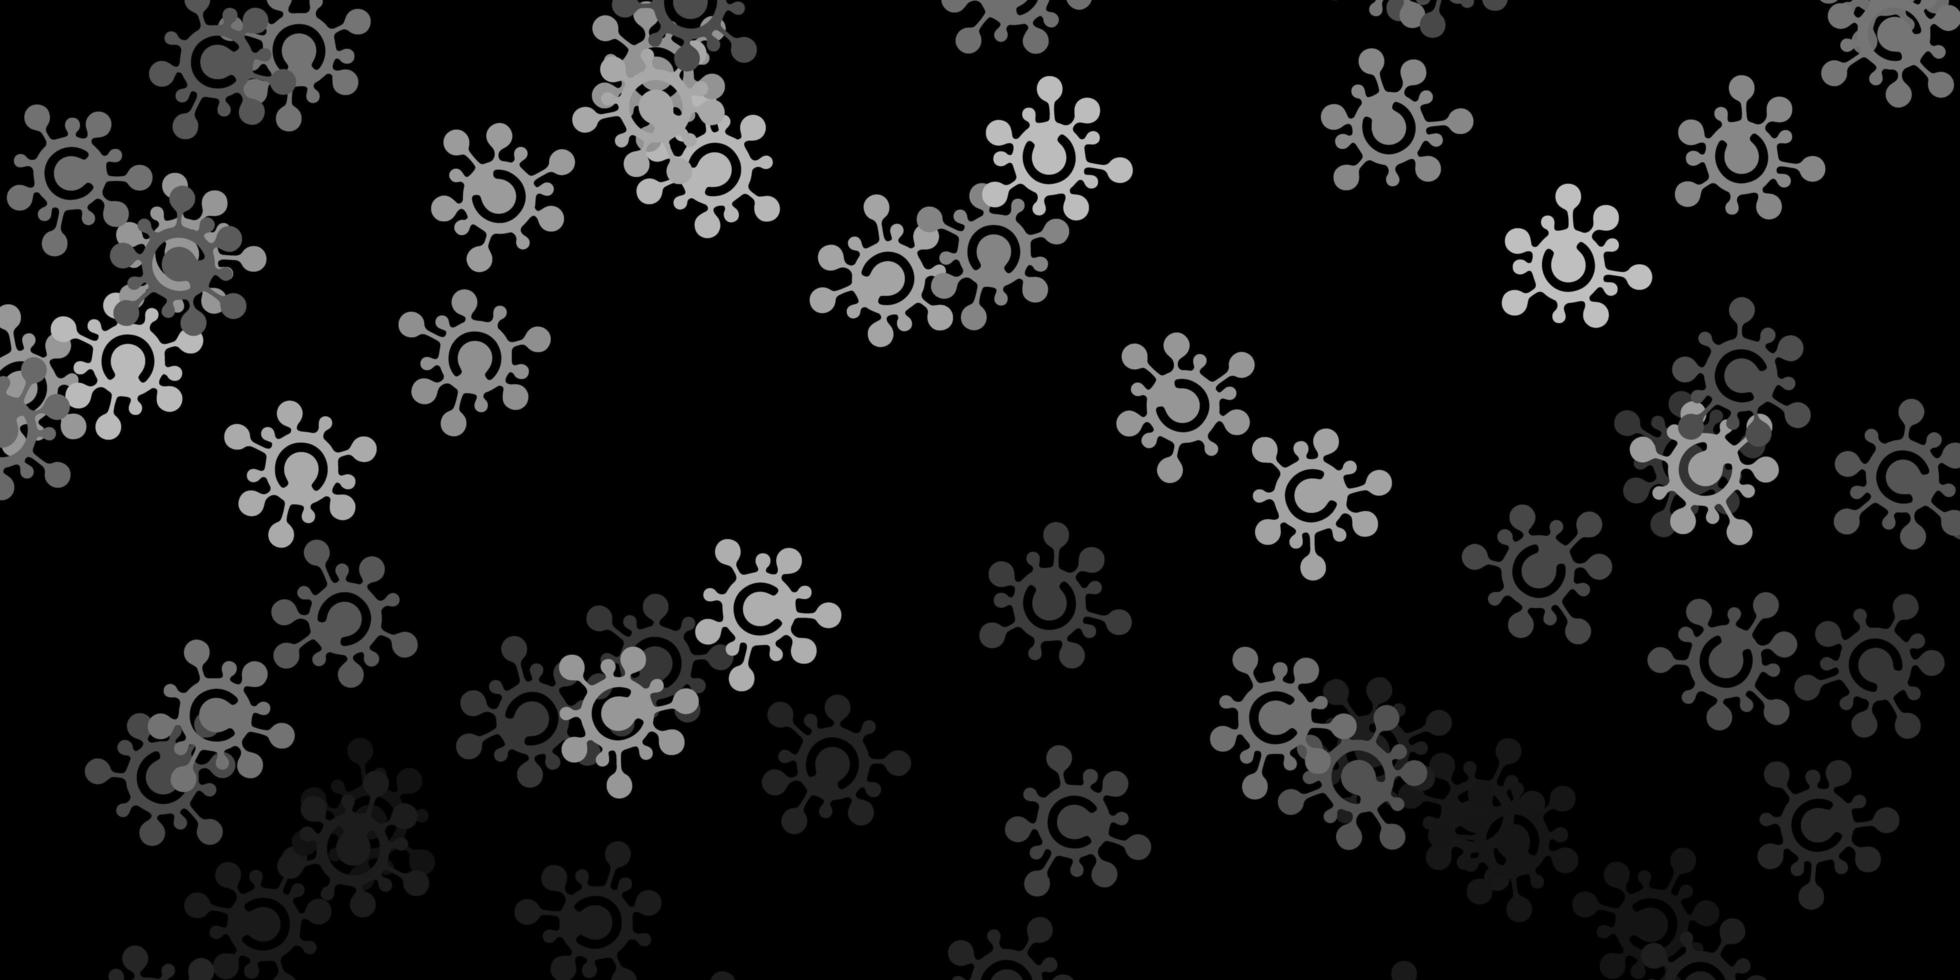 Dark gray vector backdrop with virus symbols